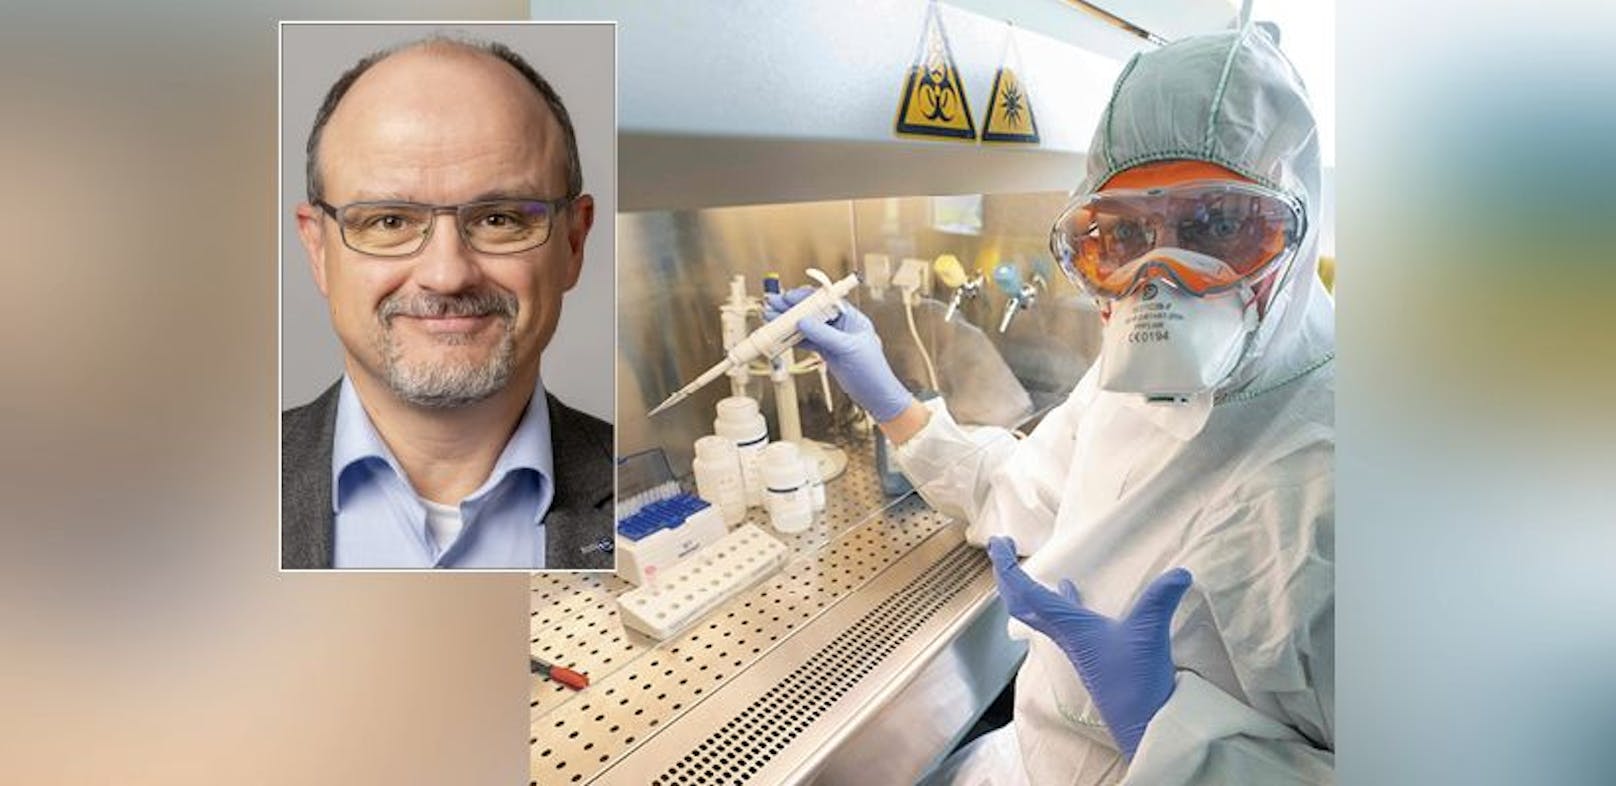 Schuldirektor Peter Klimitsch ärgert sich über die Probleme bei den PCR-Tests an den Schulen.